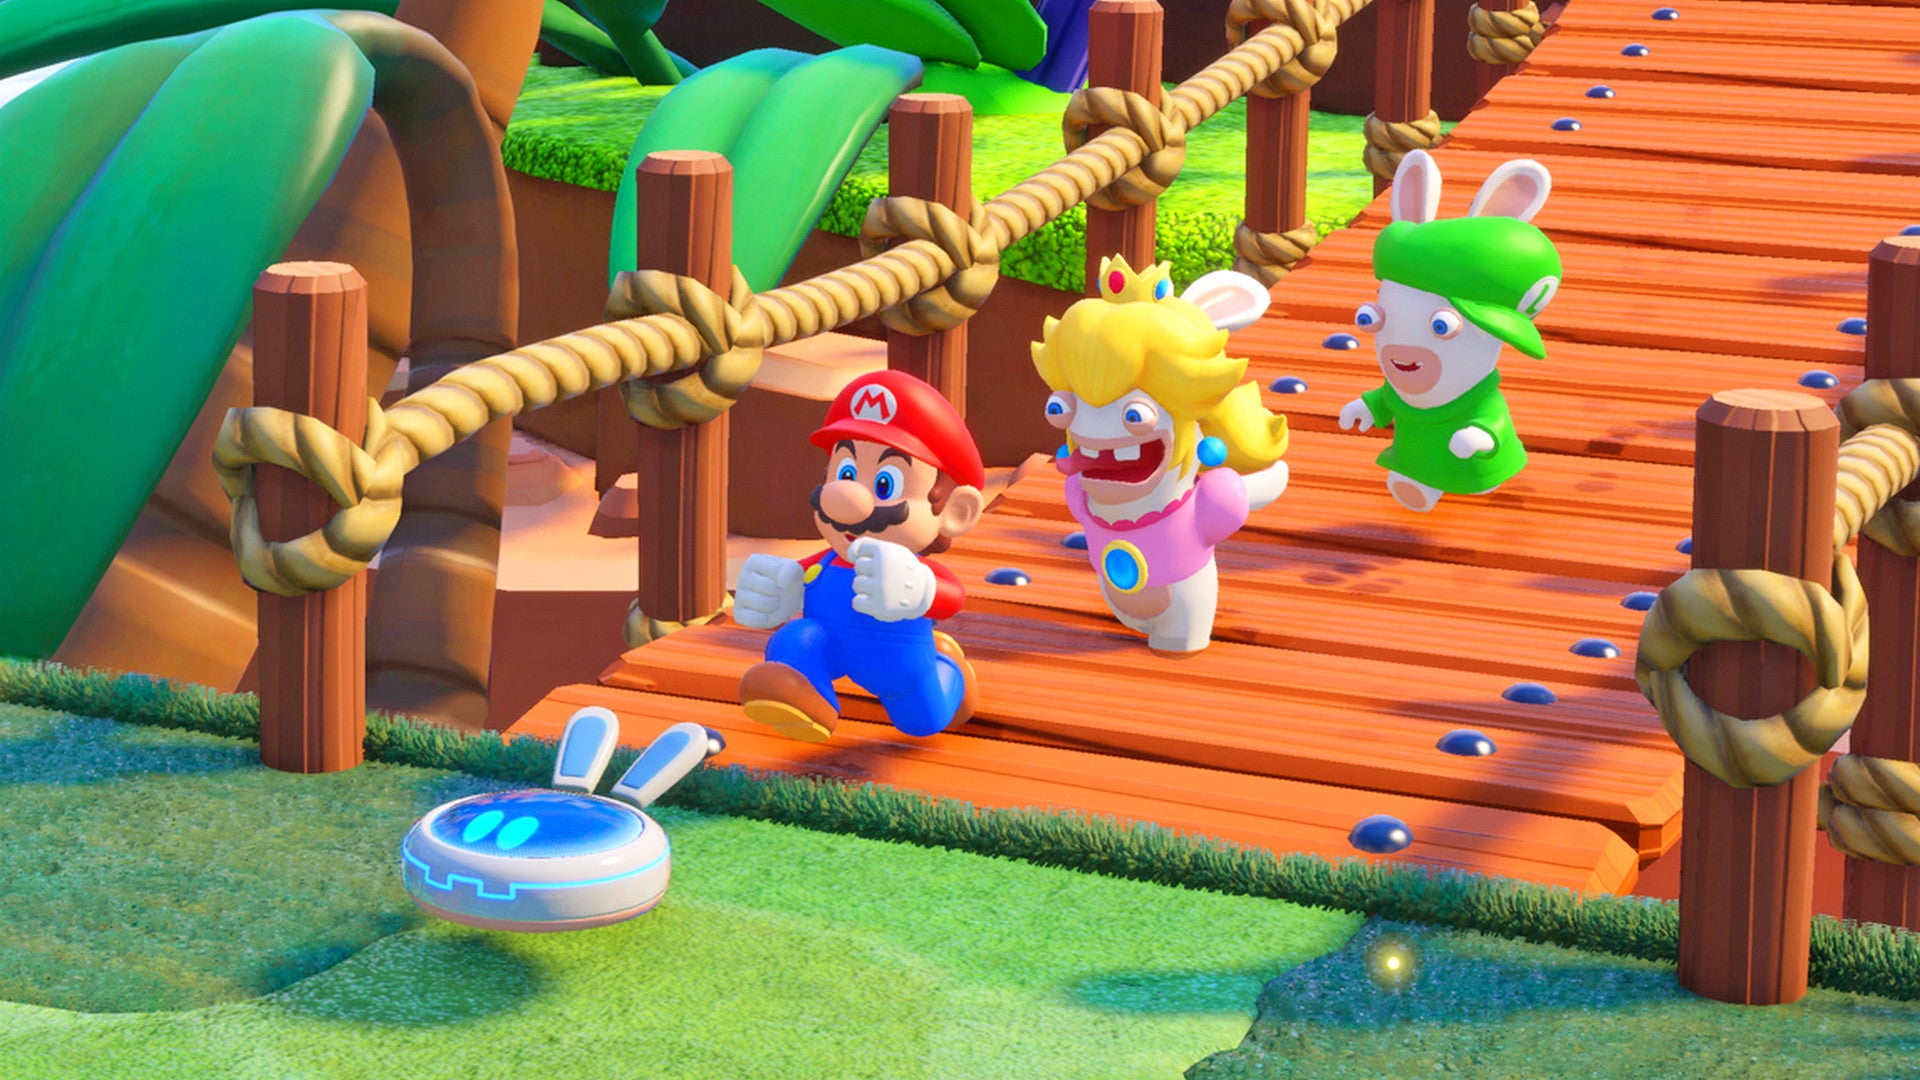 Bilder zu Mario + Rabbids: Kingdom Battle spielt ihr jetzt kostenlos auf der Switch - Nur für kurze Zeit!